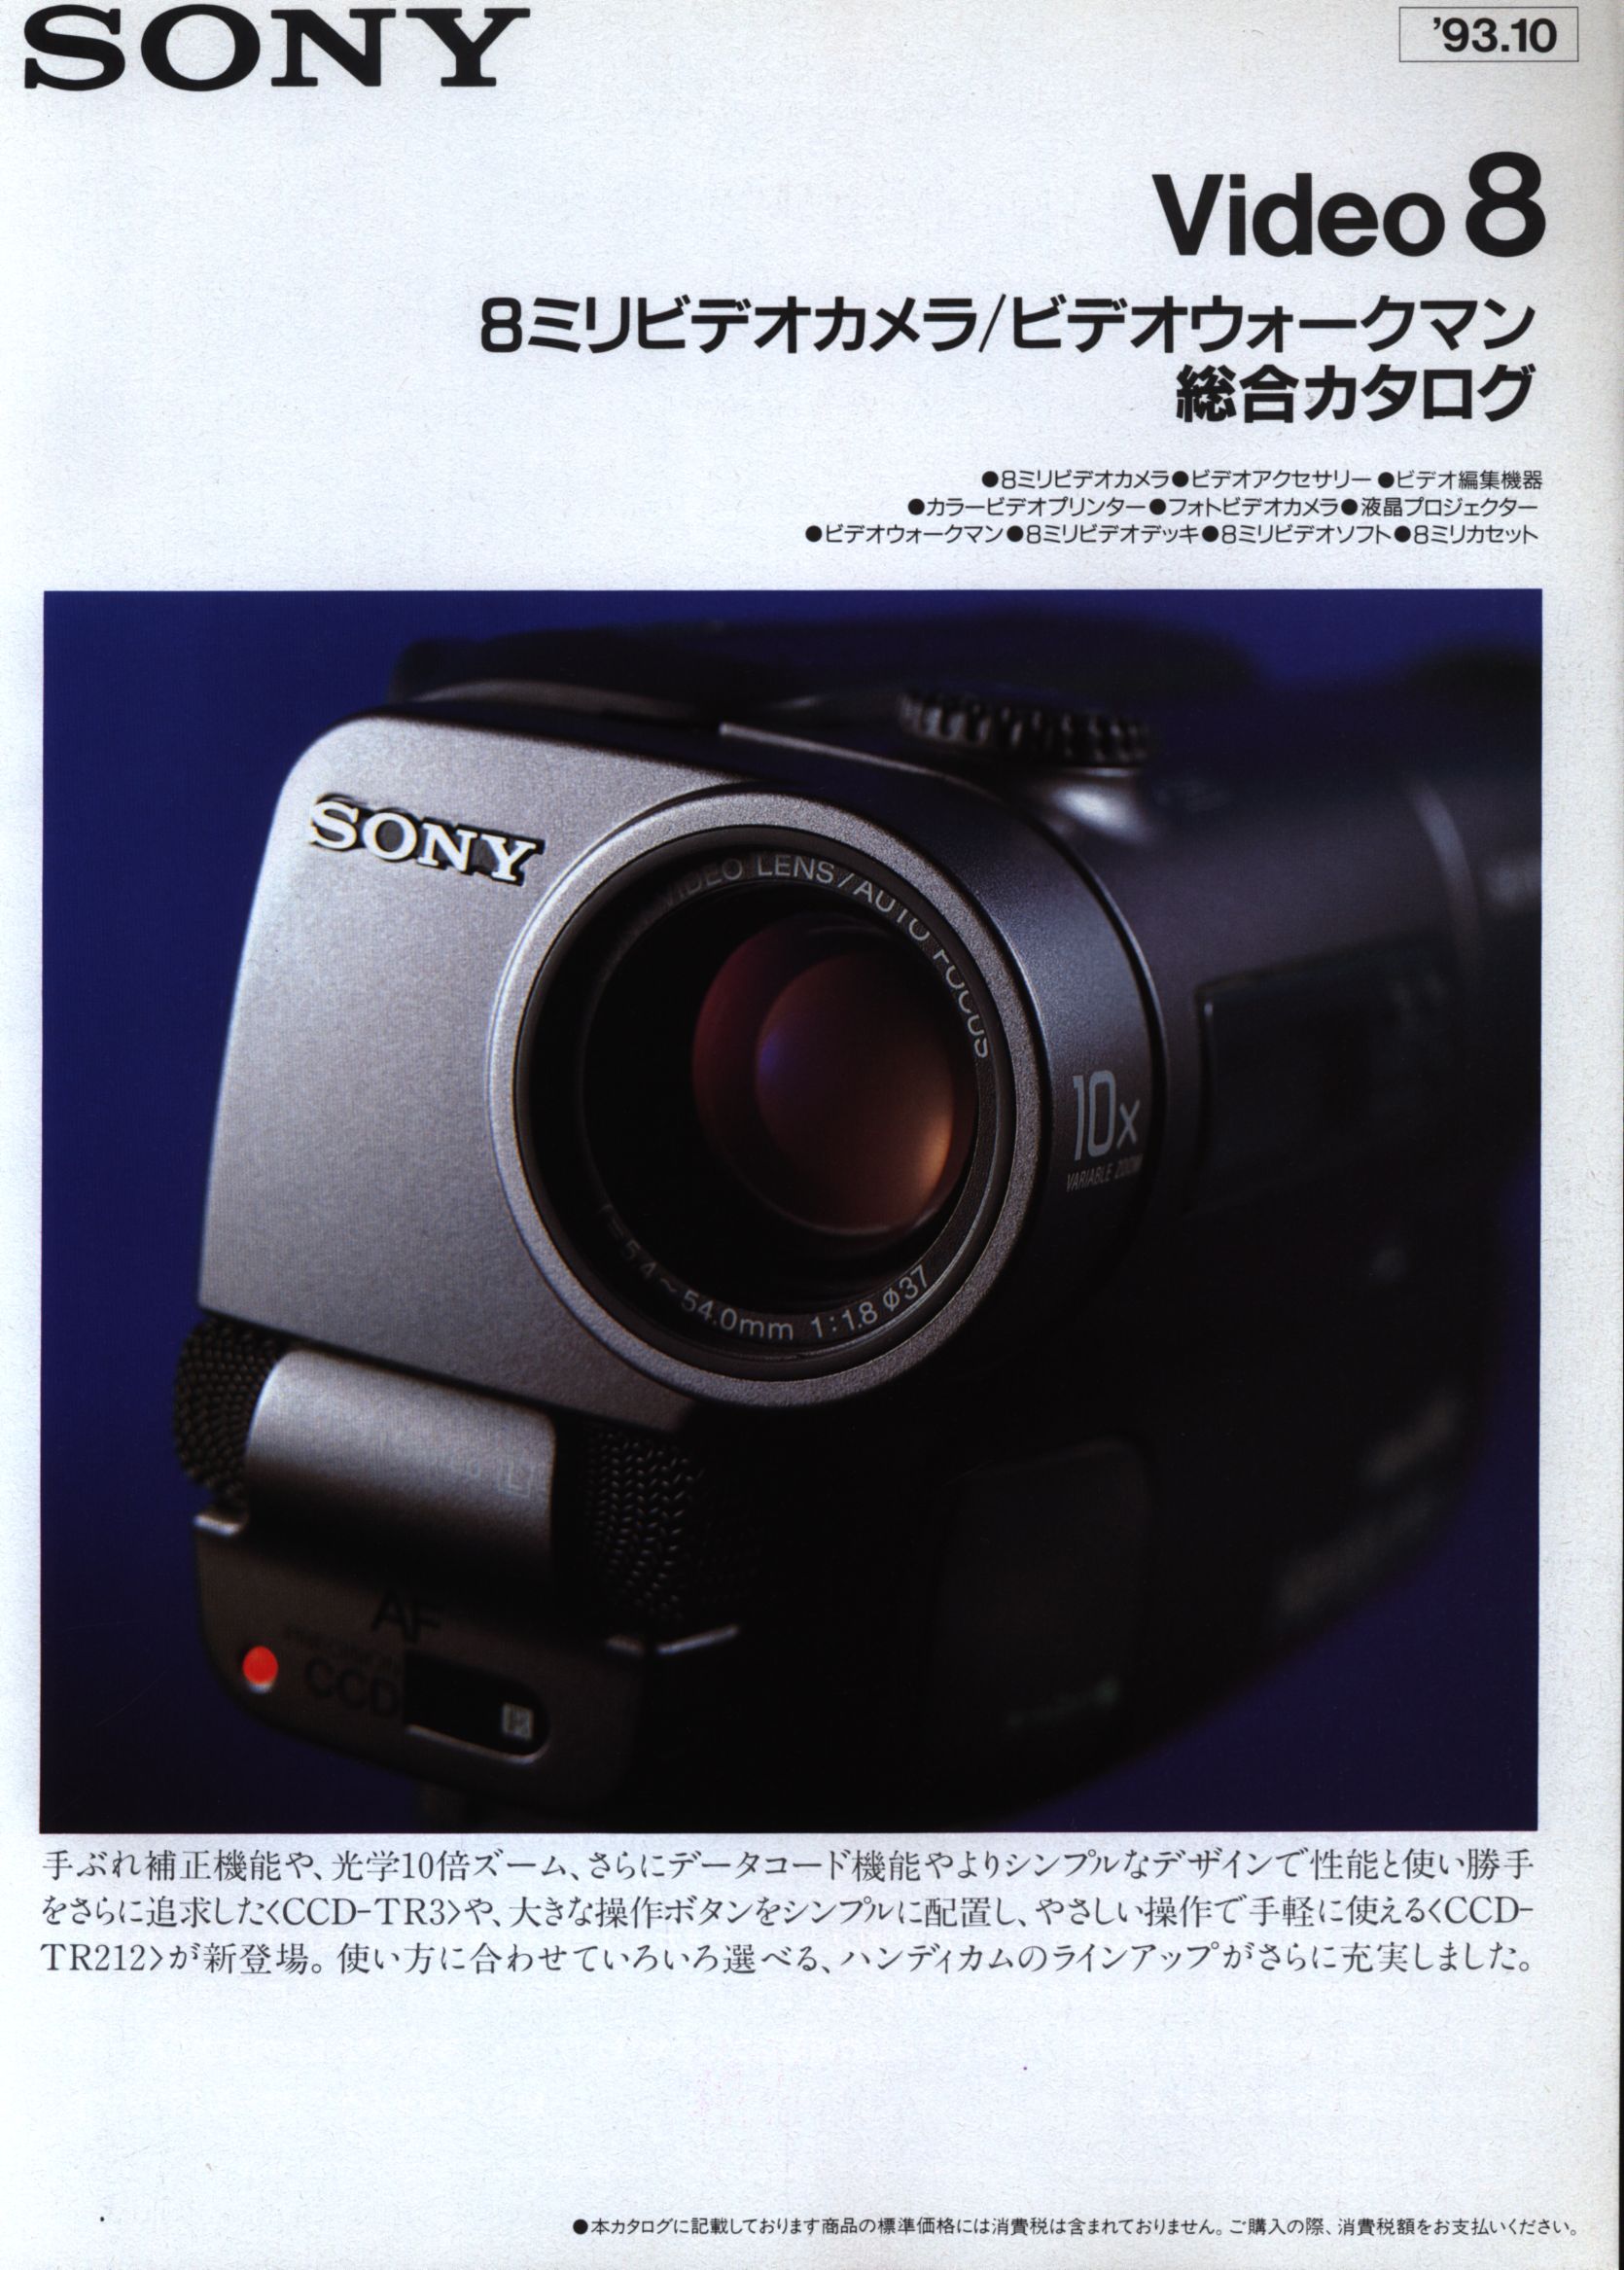 8ミリビデオカメラ規制前CCD-TRV425K送料無料No71 - ビデオカメラ